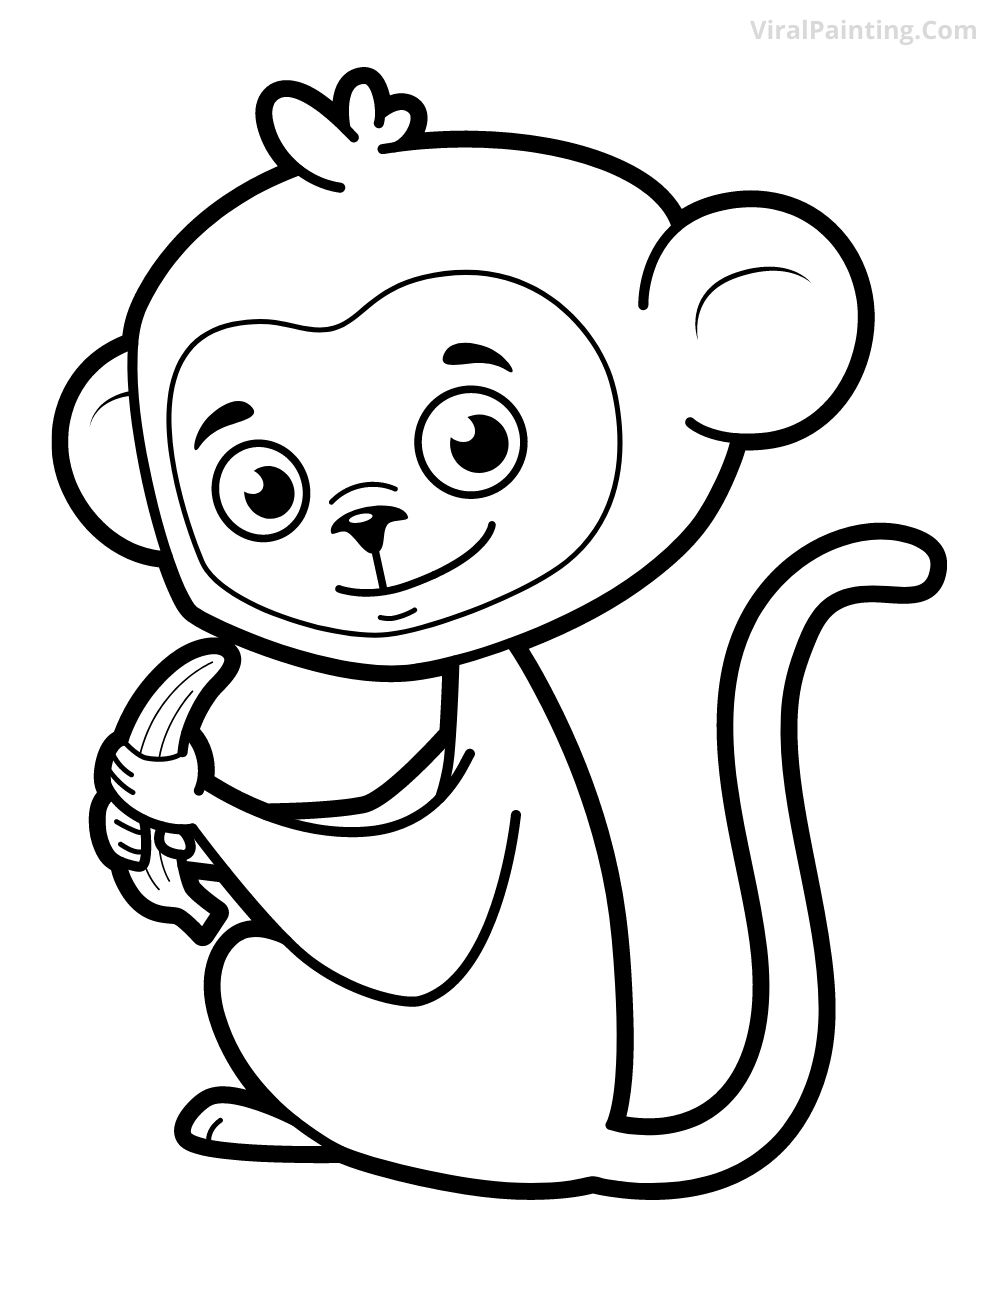 monkey drawing ideas